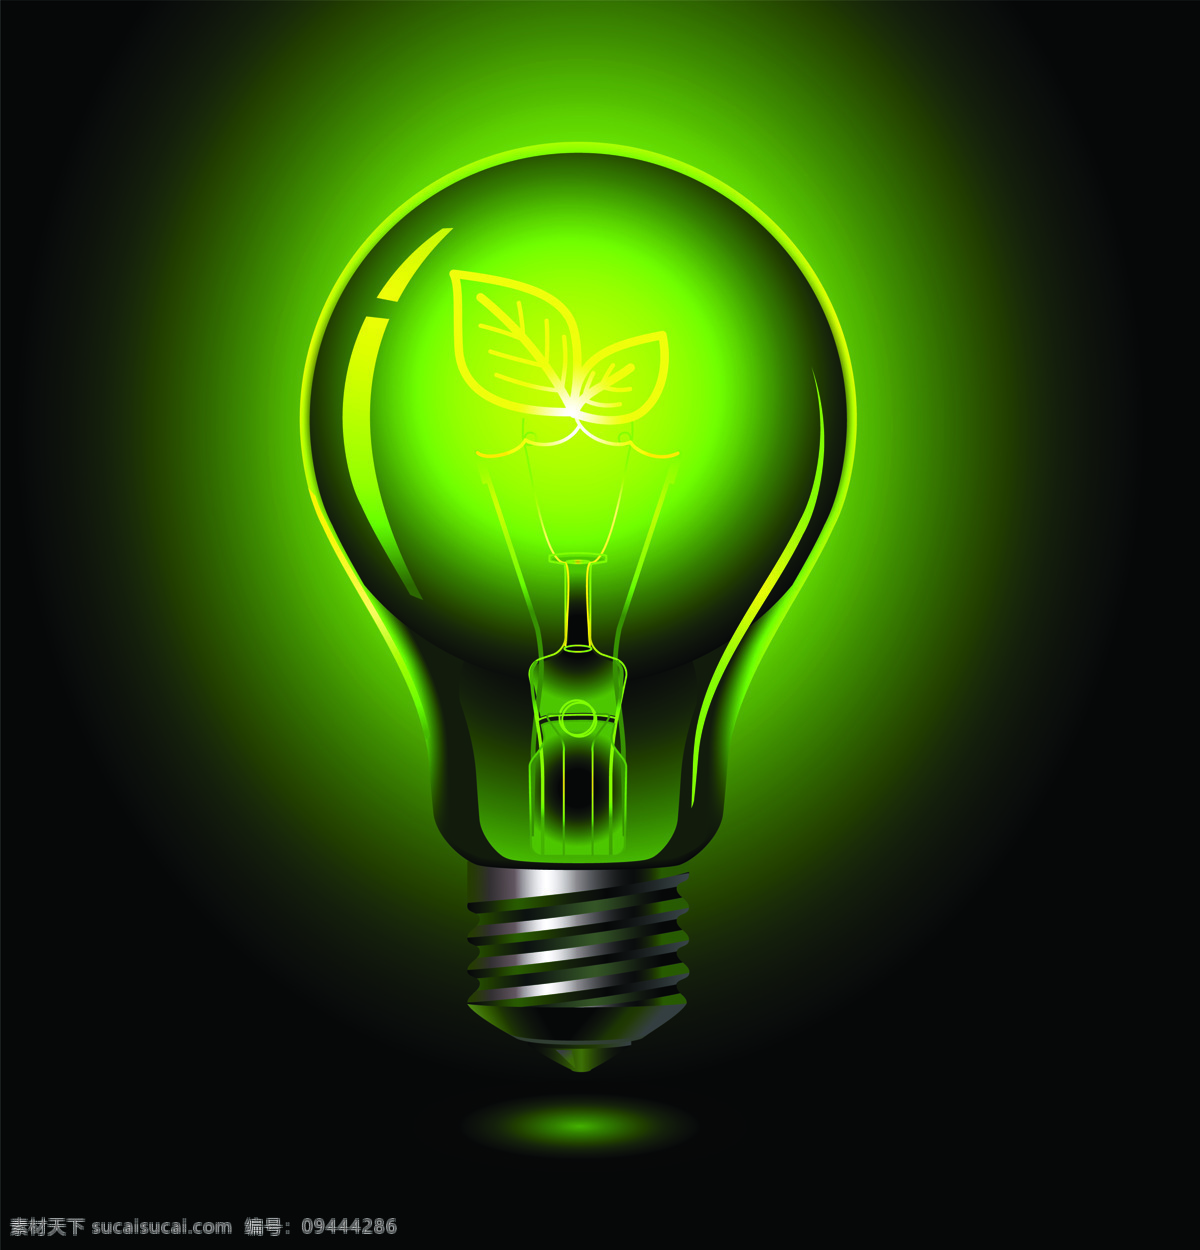 能源概念 电灯泡 绿色电灯泡 绿色能源 环保能源 生态能源 洁净能源 可再生资源 能源环保 生活用品 生活百科 黑色